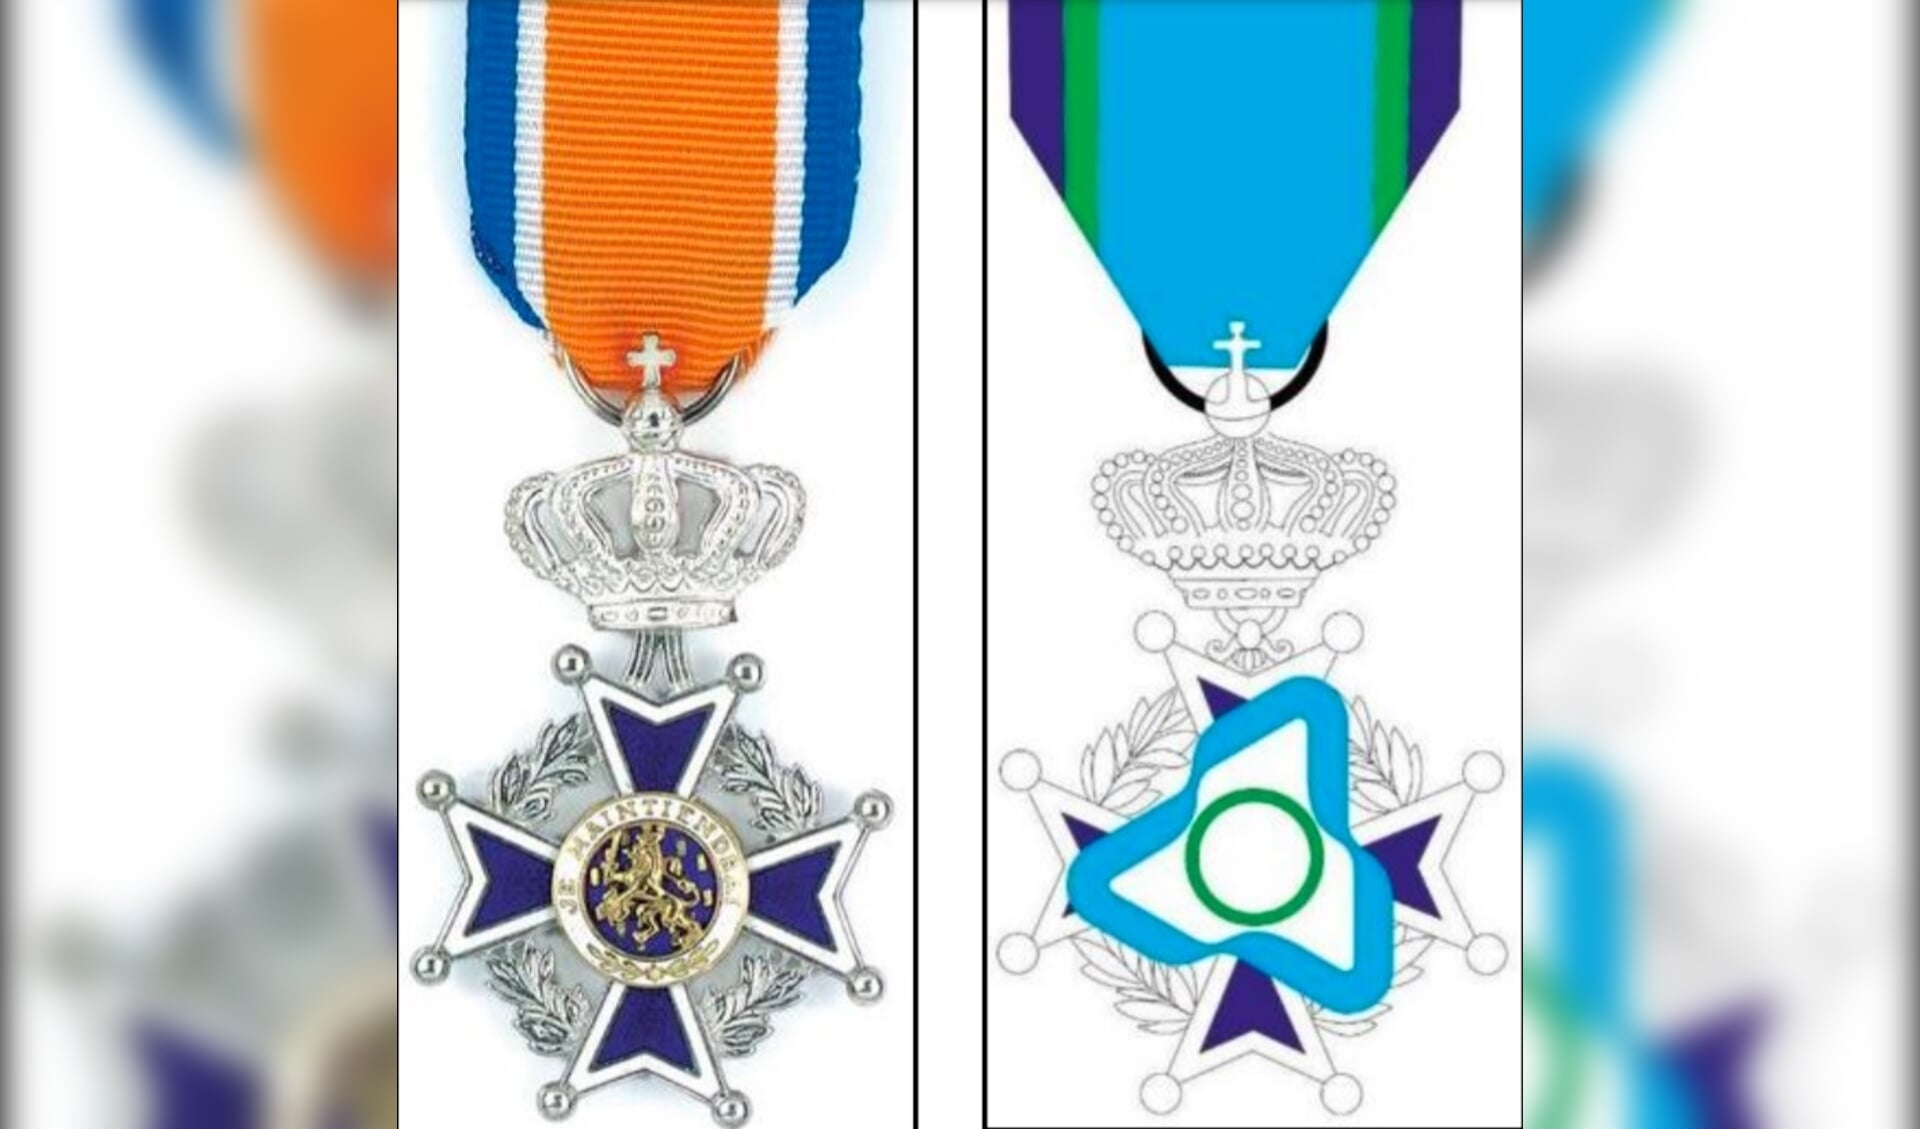 Links het lintje dat men krijgt bij de benoeming tot Lid in de Orde van Oranje-Nassau, rechts staat een eerste opzet voor het jeugdlintje.